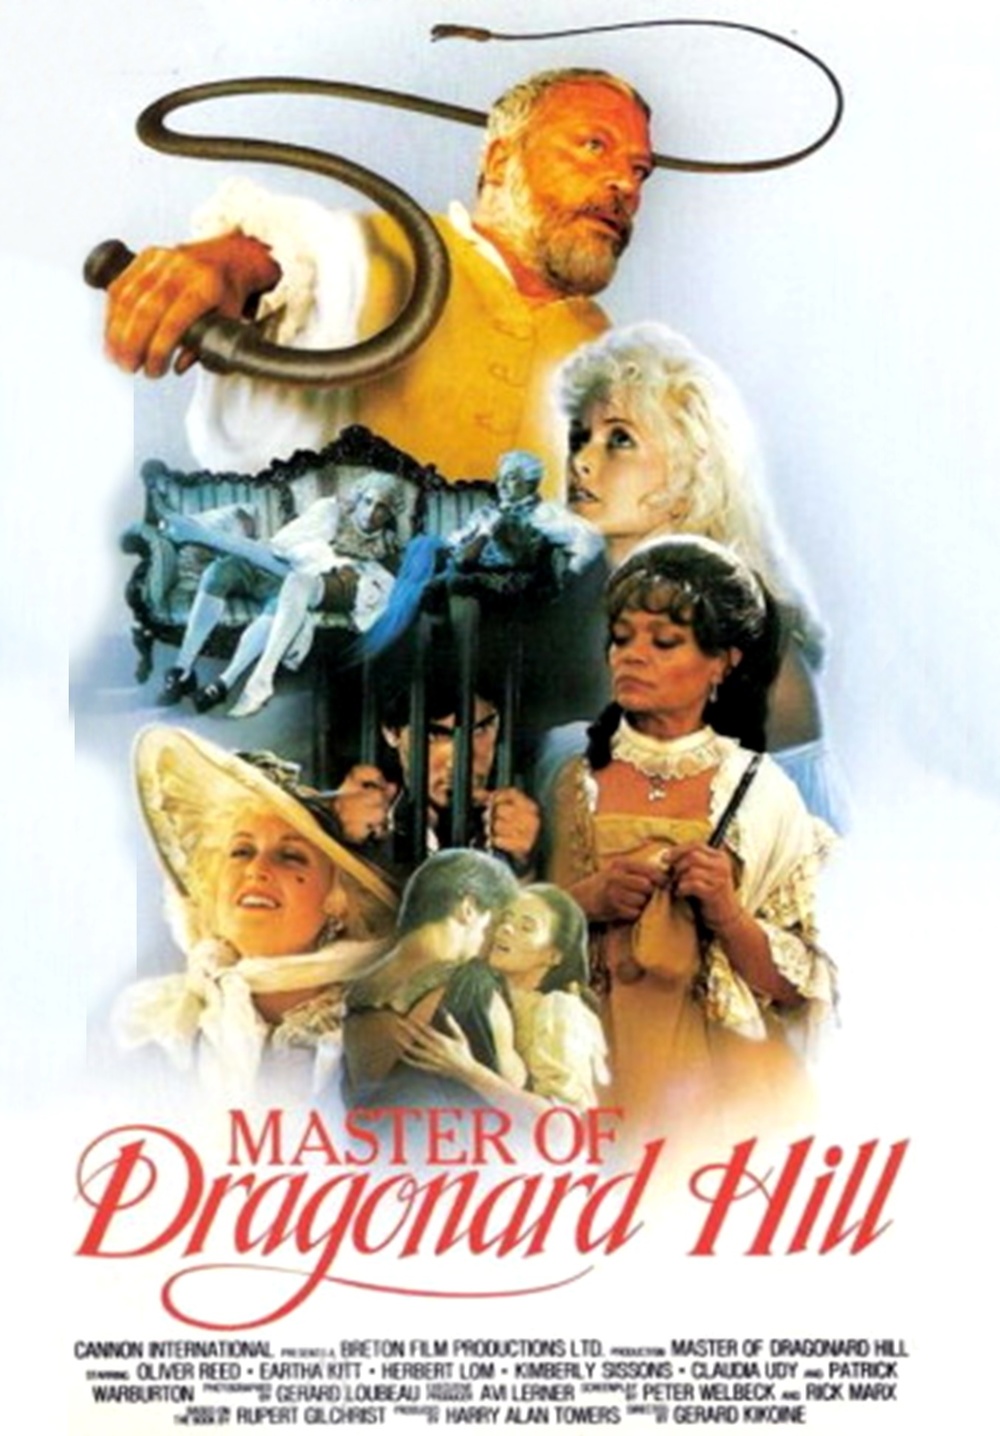 affiche du film Le maître de Dragonard Hill